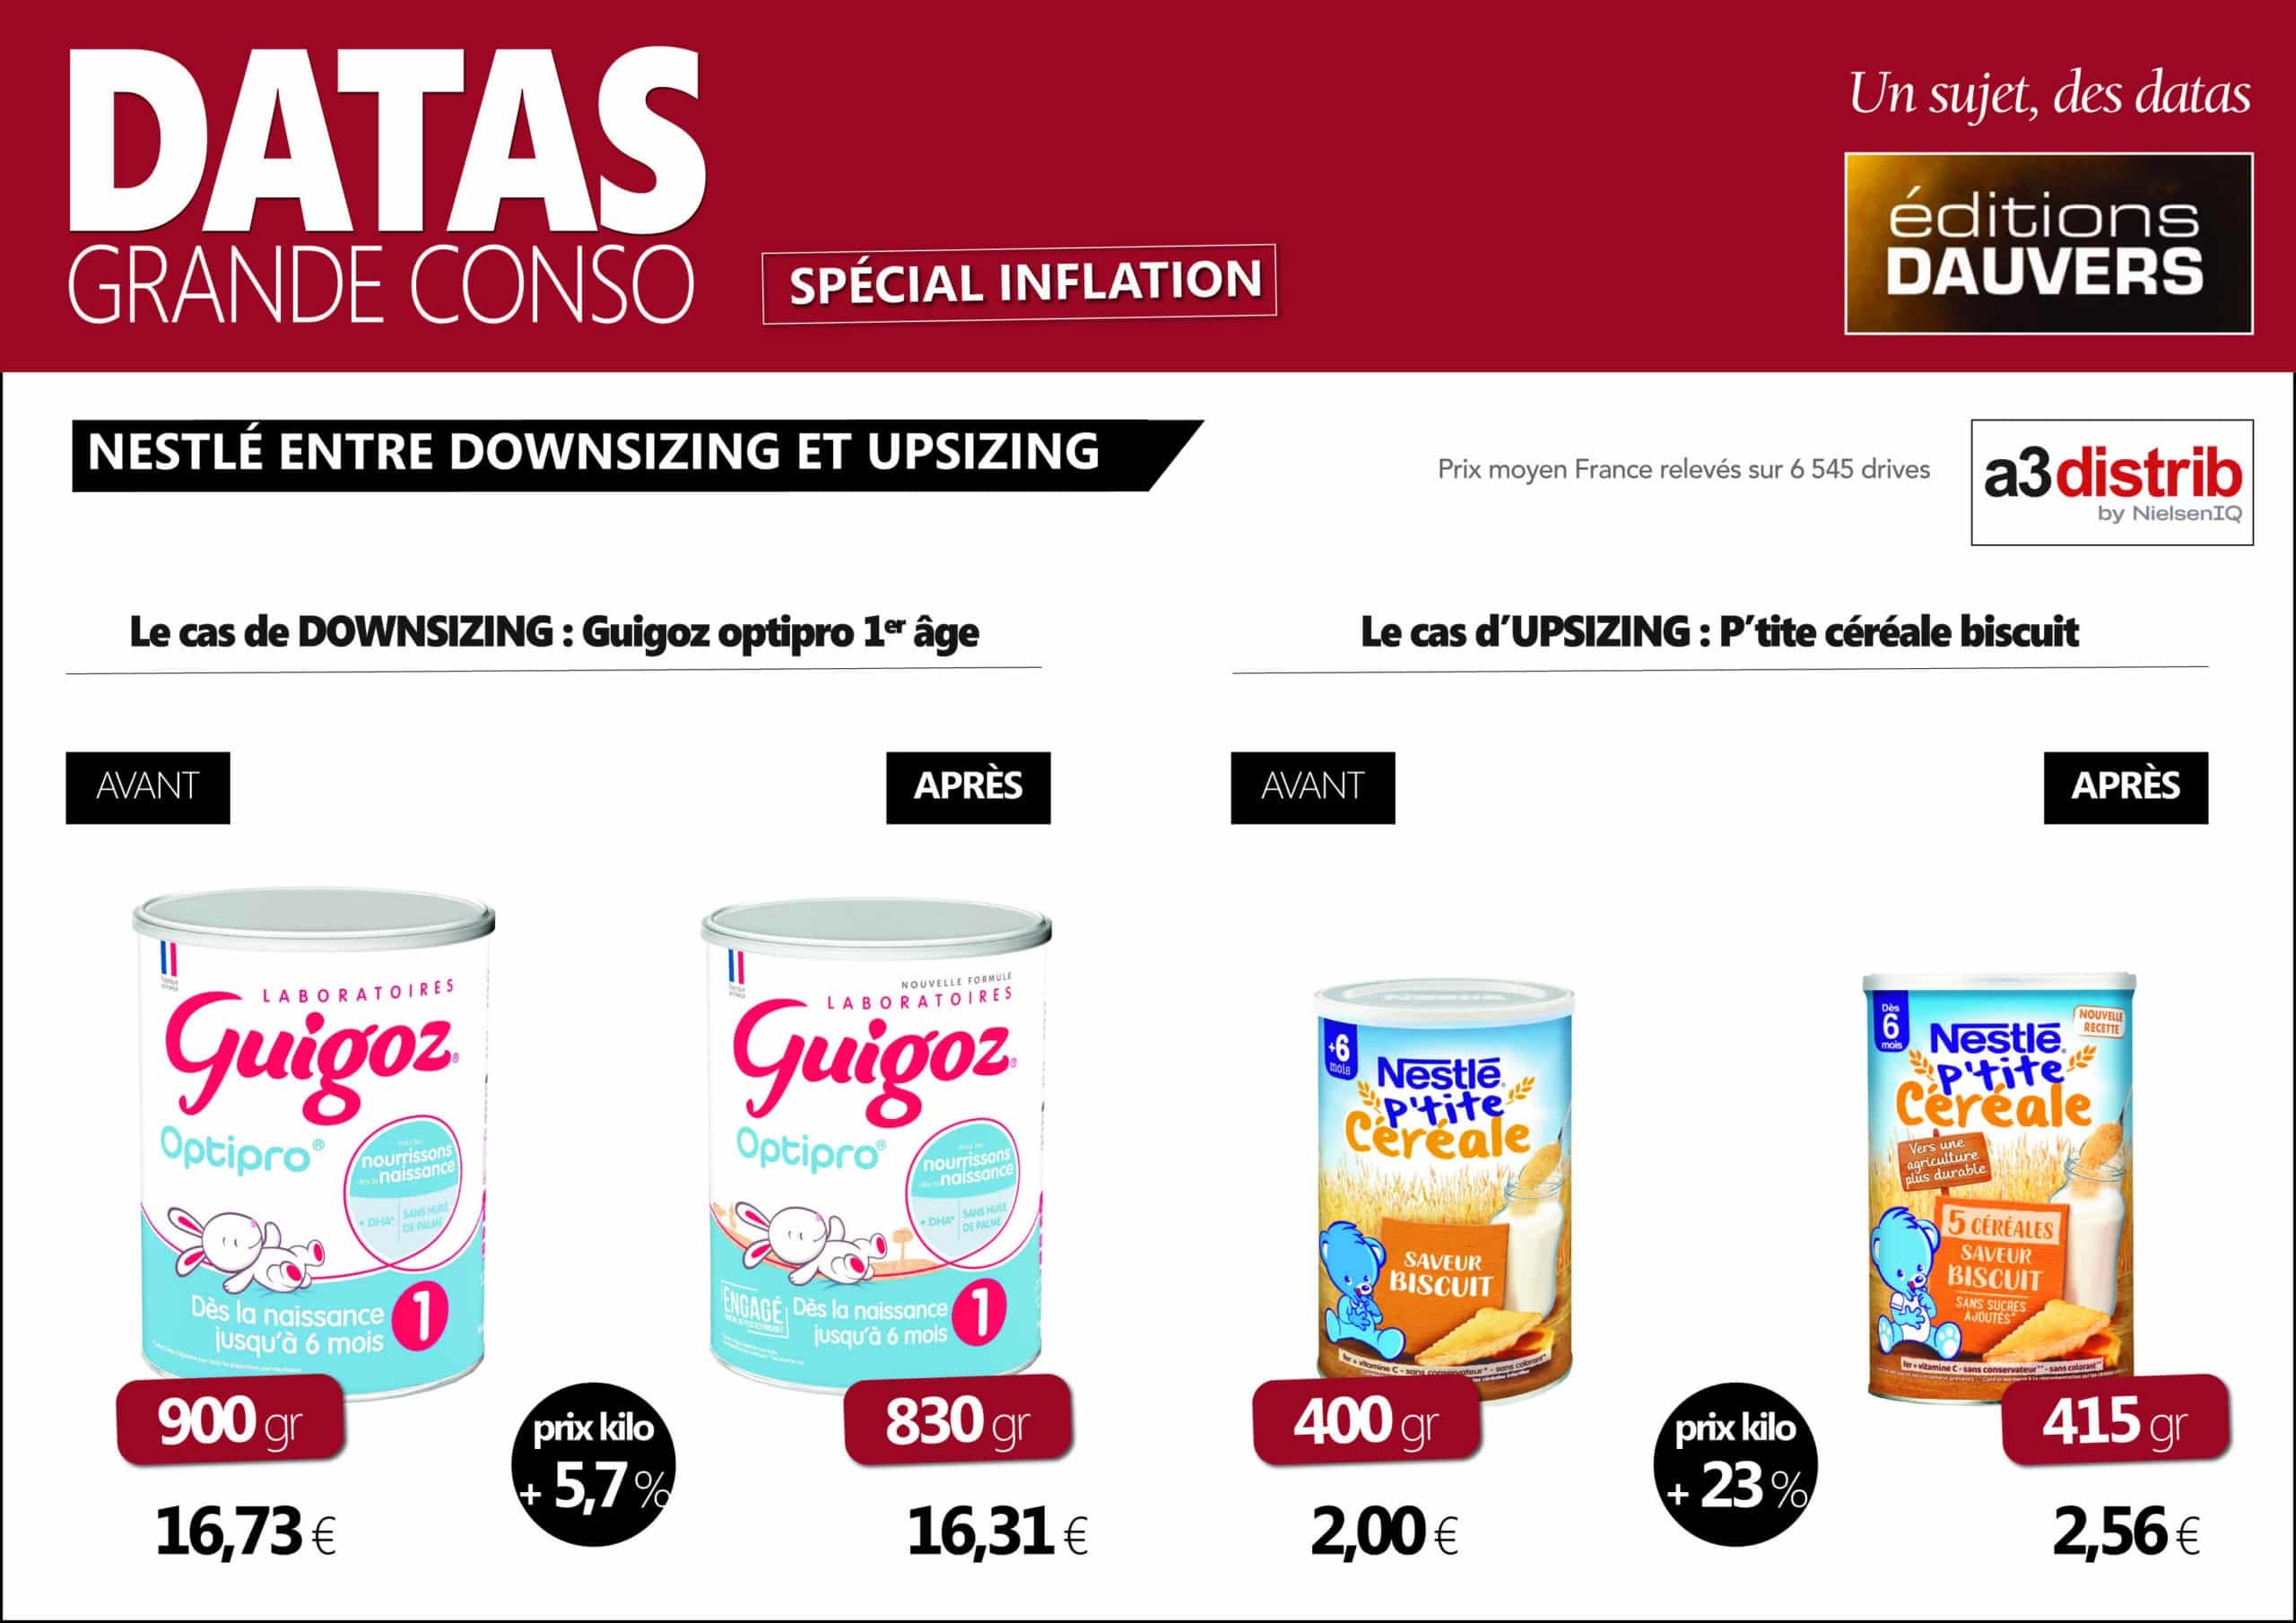 P'tite céréale 5 céréales biscuitée dès 6 mois boîte, Nestlé (415